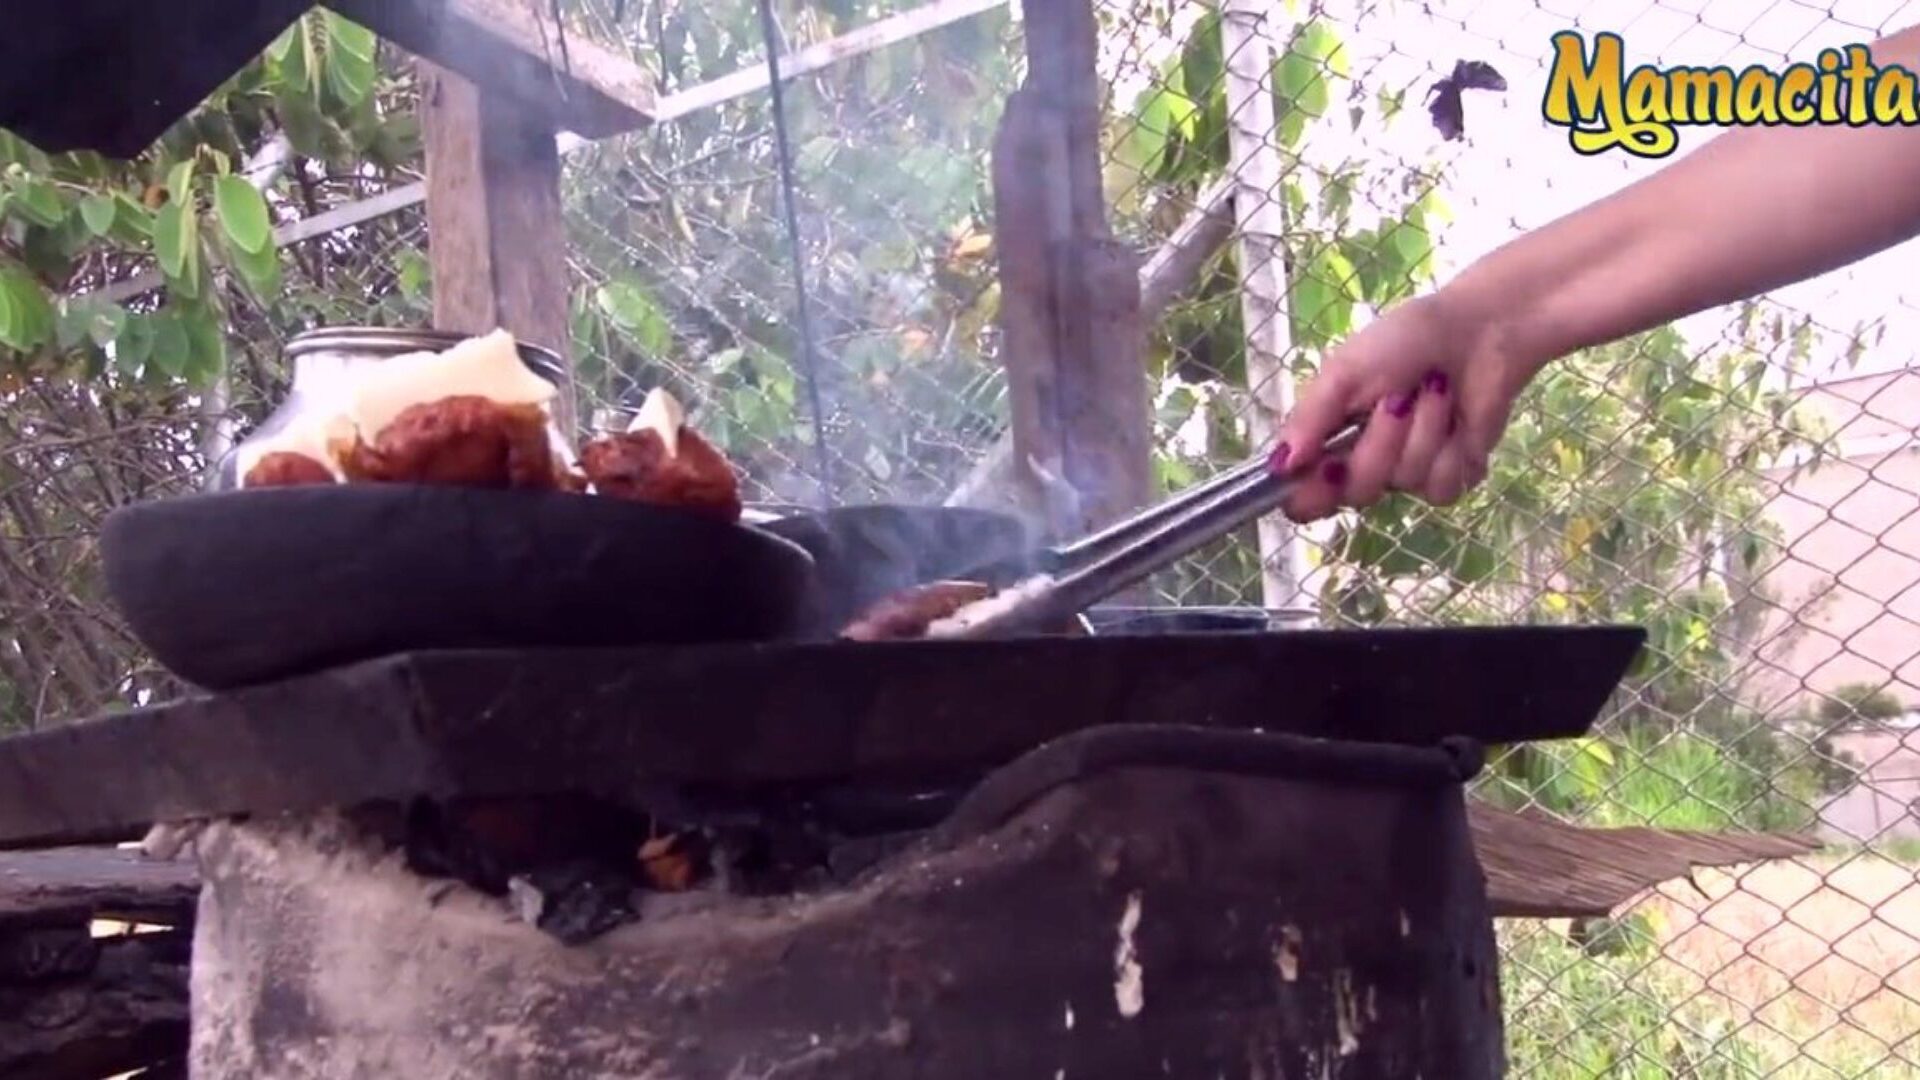 mamacitaz-哥伦比亚超级热卖肉的人渴望一种不同类型的肉